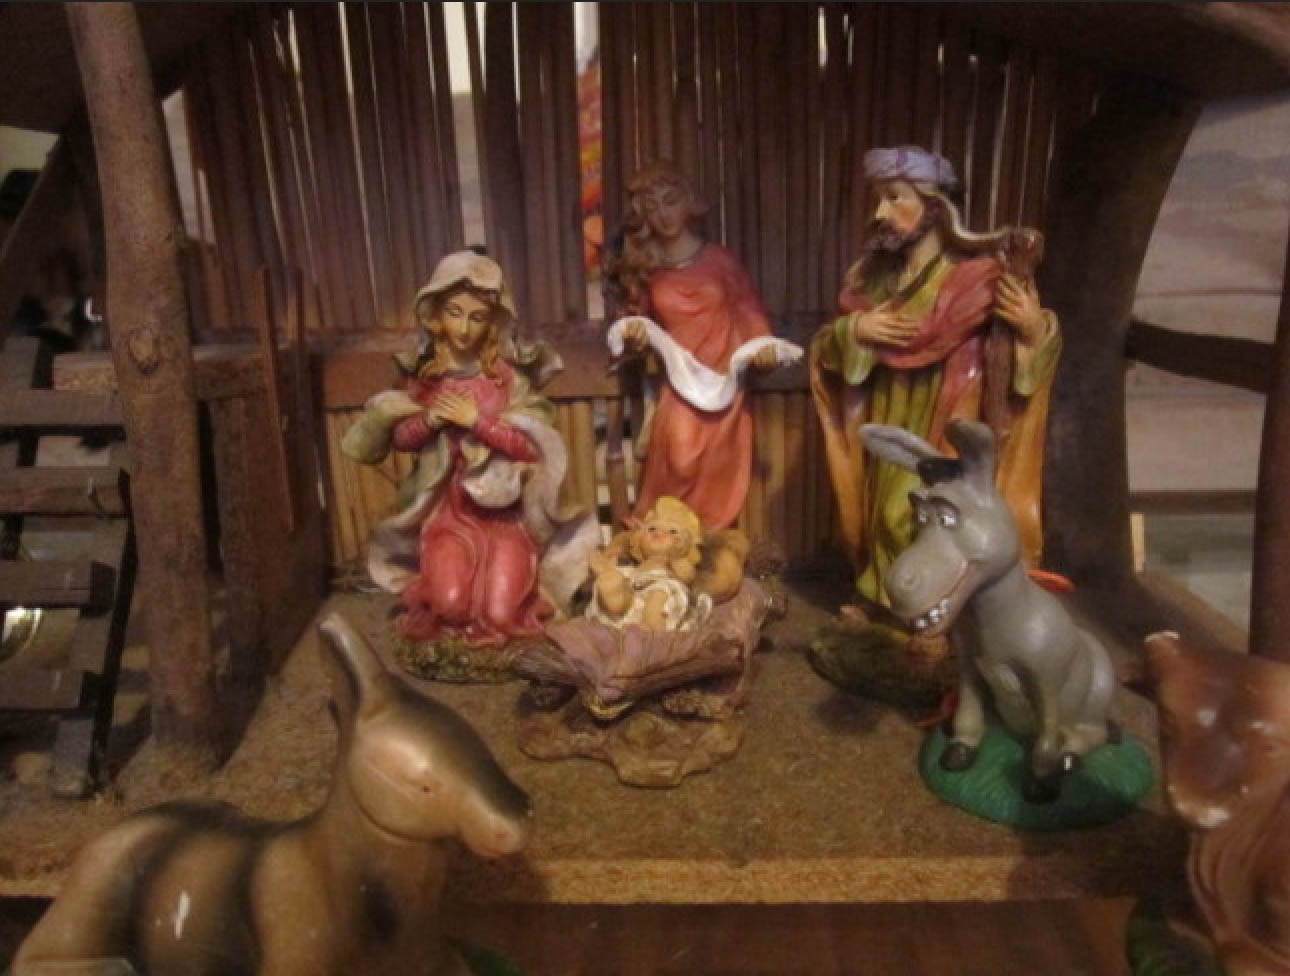 Inappropriate nativity scene #7